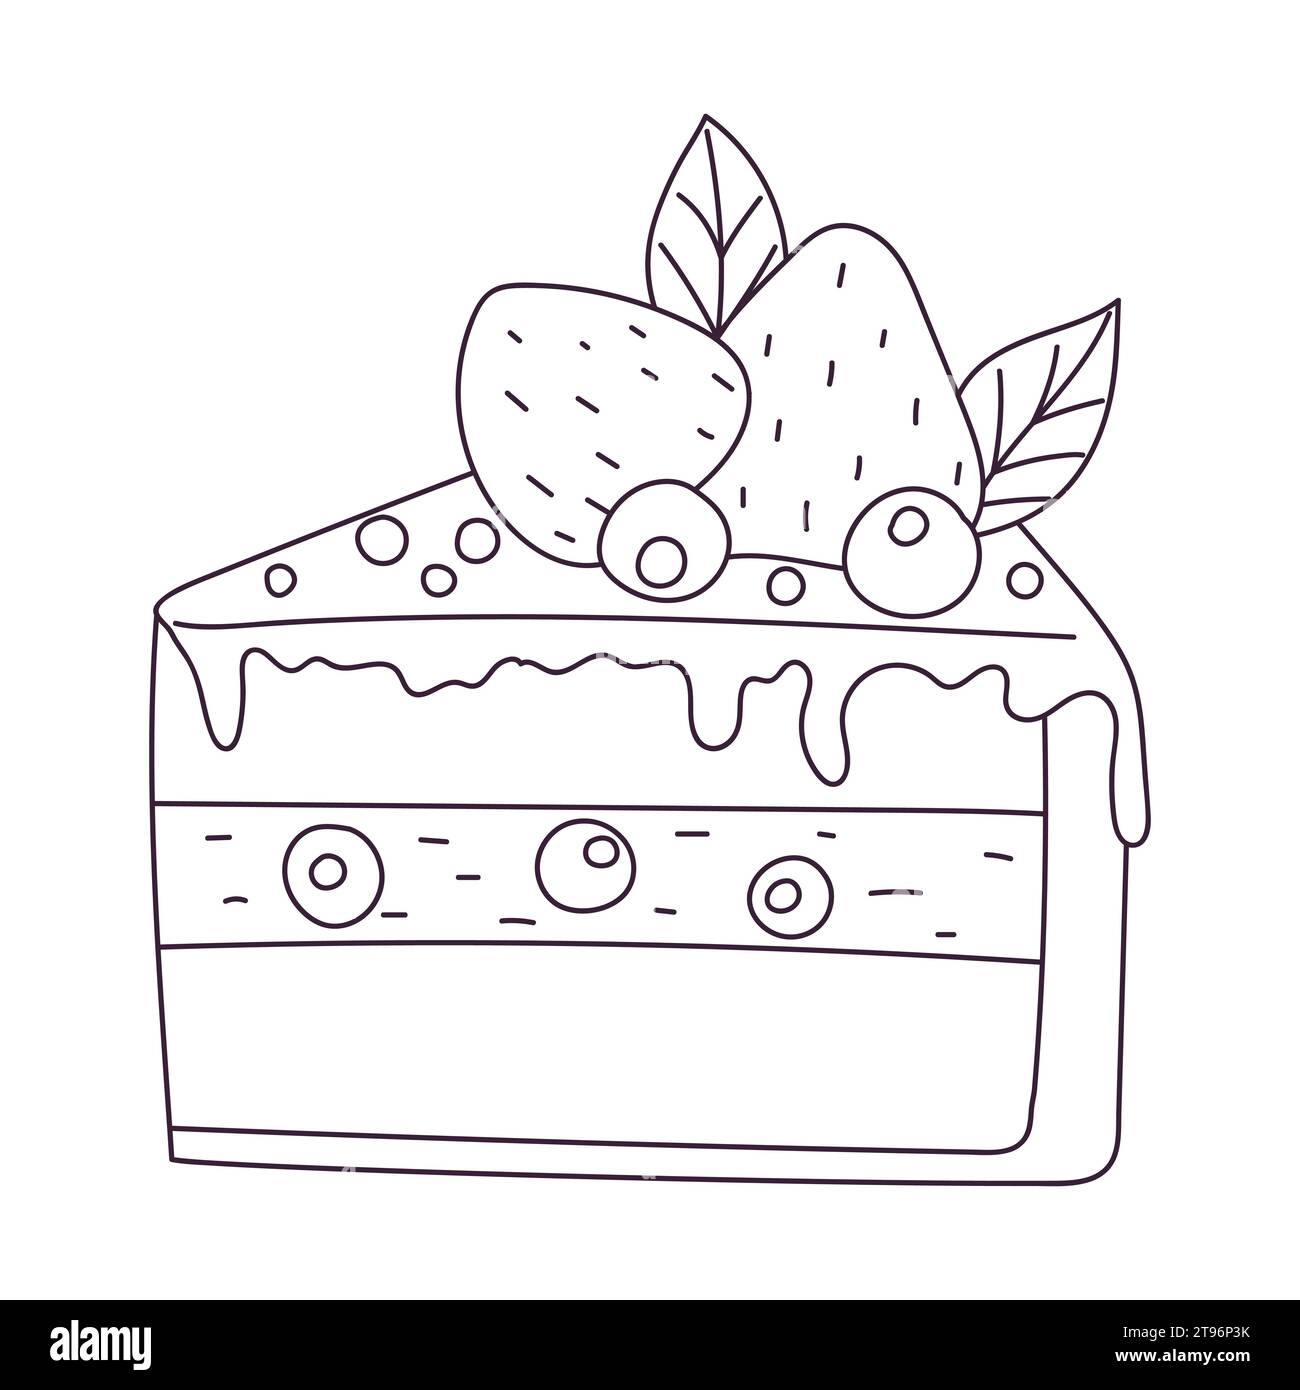 Handgezeichnetes Stück Kuchen mit Erdbeere und Heidelbeere. Süßes Essen, Nachtisch. Umrissmuster-Vektor-Schwarz-weiß-Illustration isoliert auf einem weißen Ba Stock Vektor